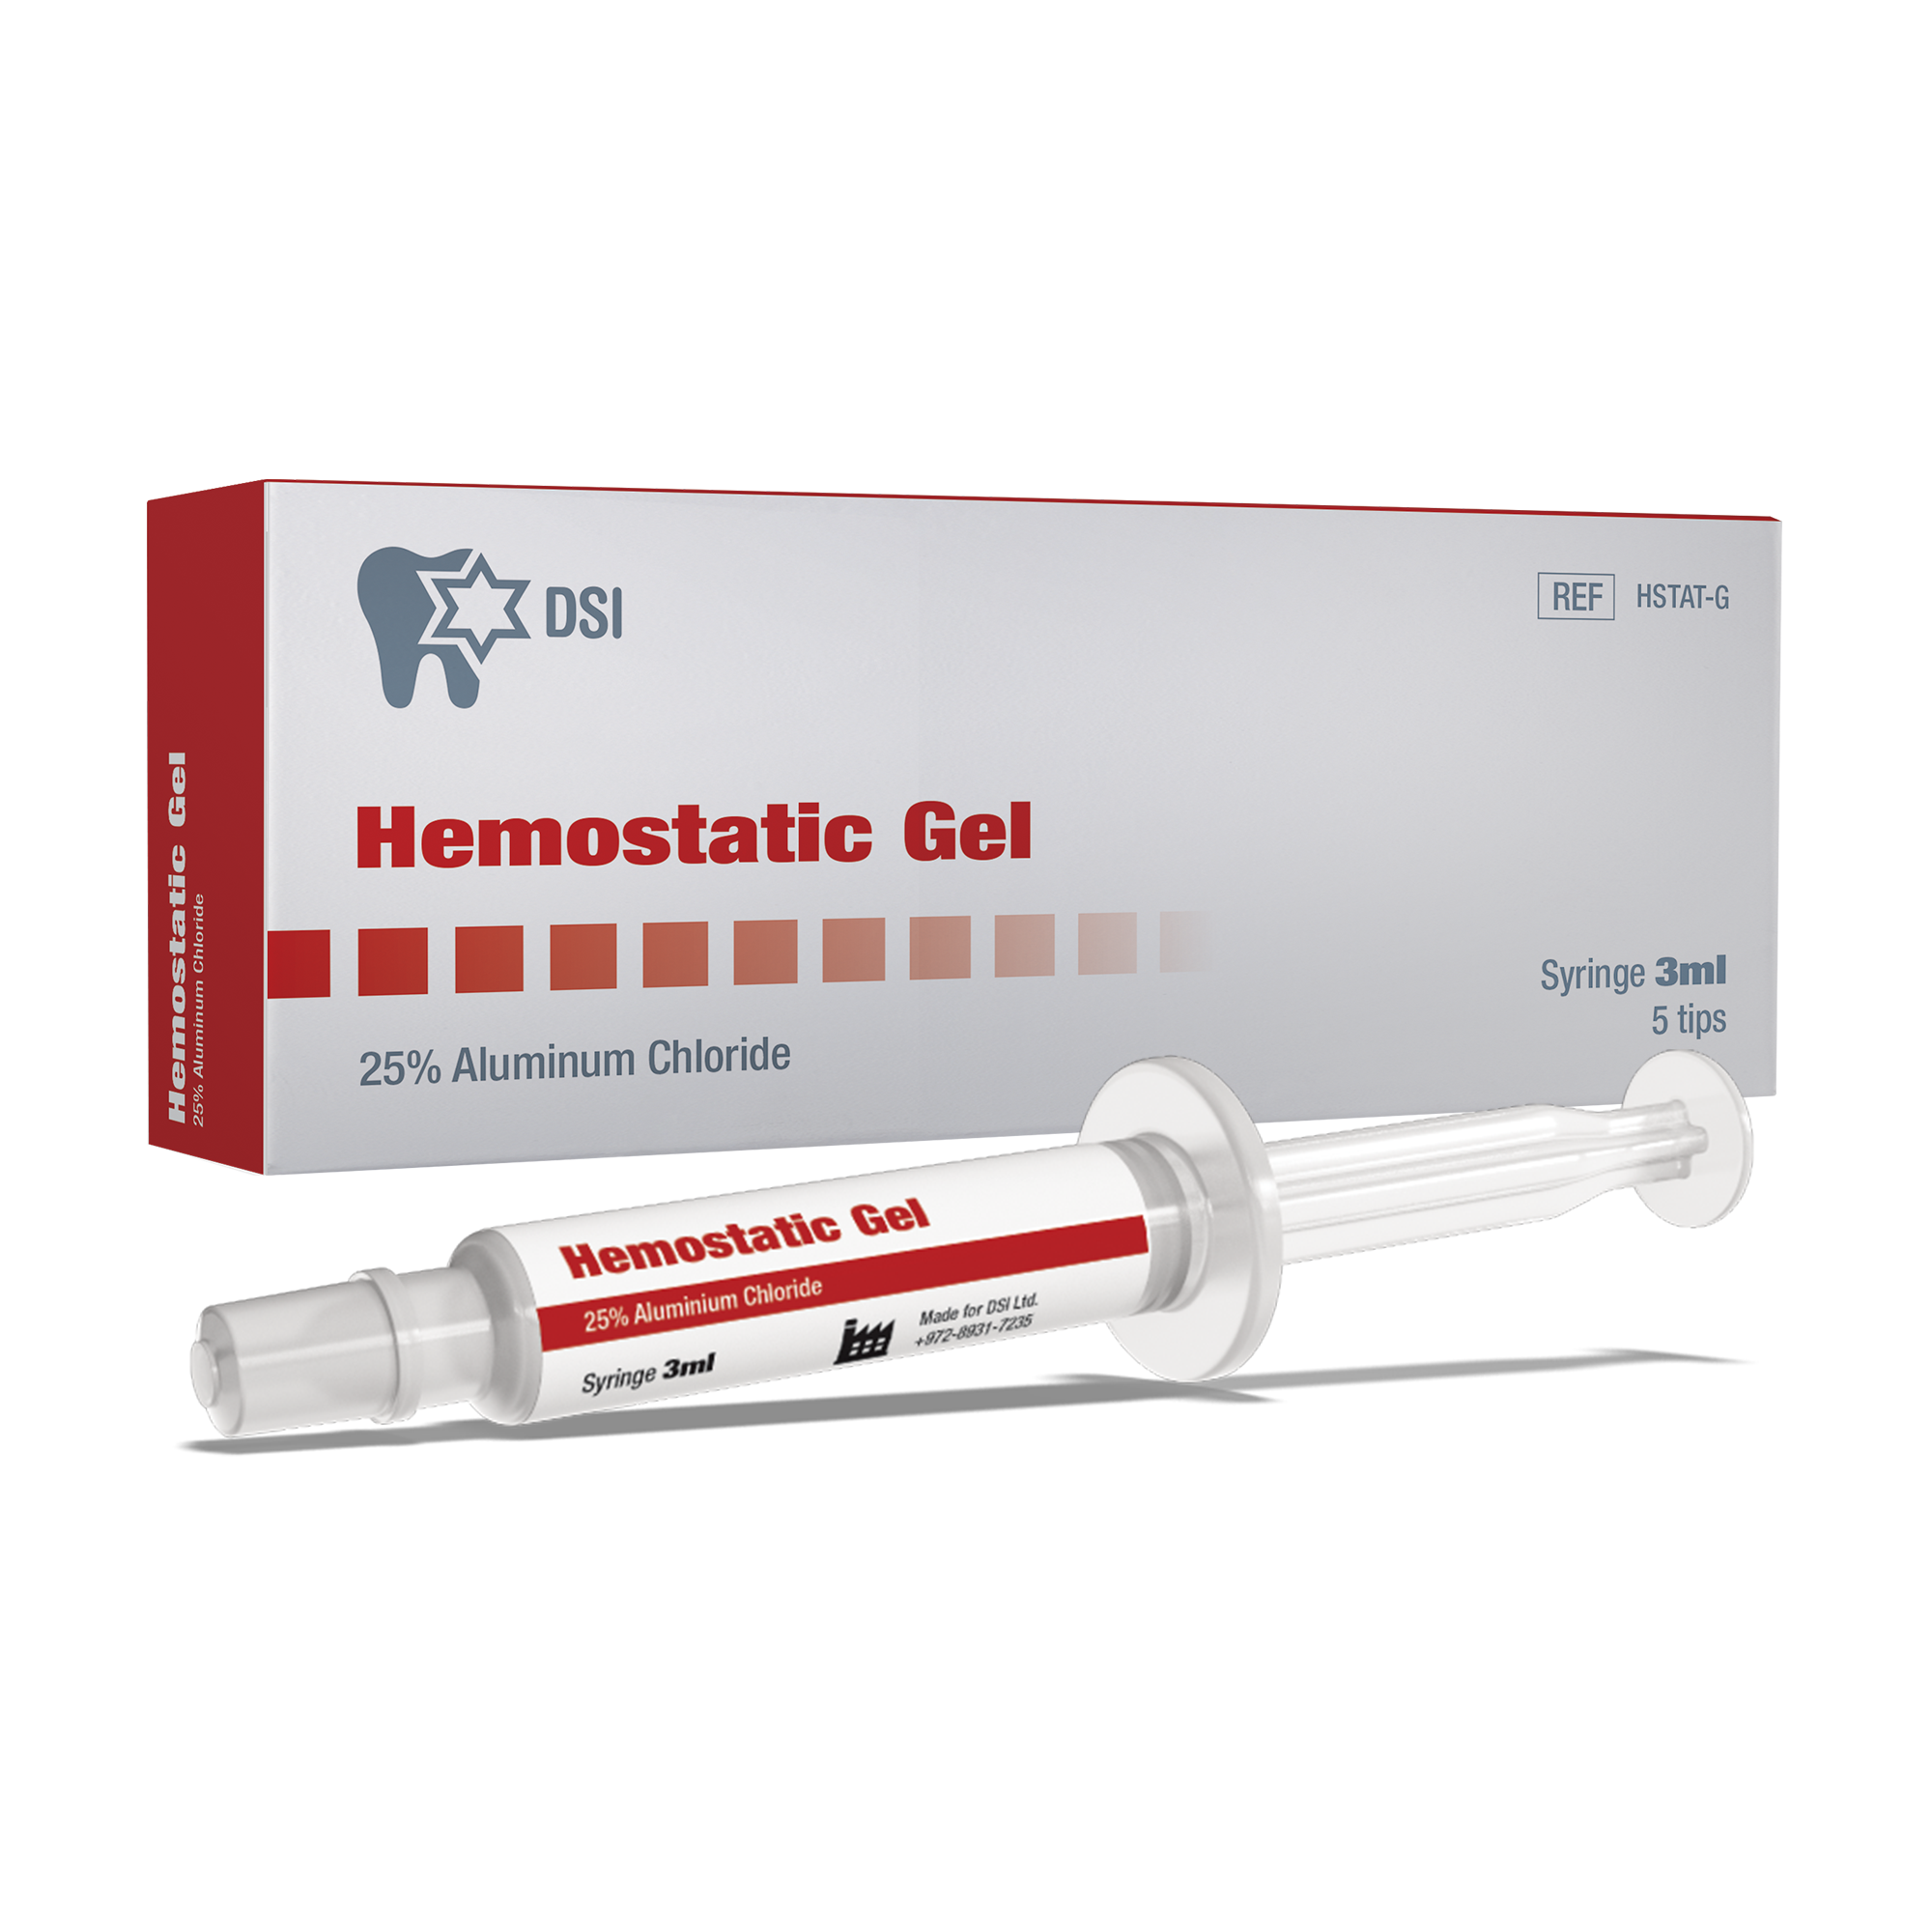 DSI Hemostatic Gel 25% aluminum chloride Stops Bleeding 3ml syringe